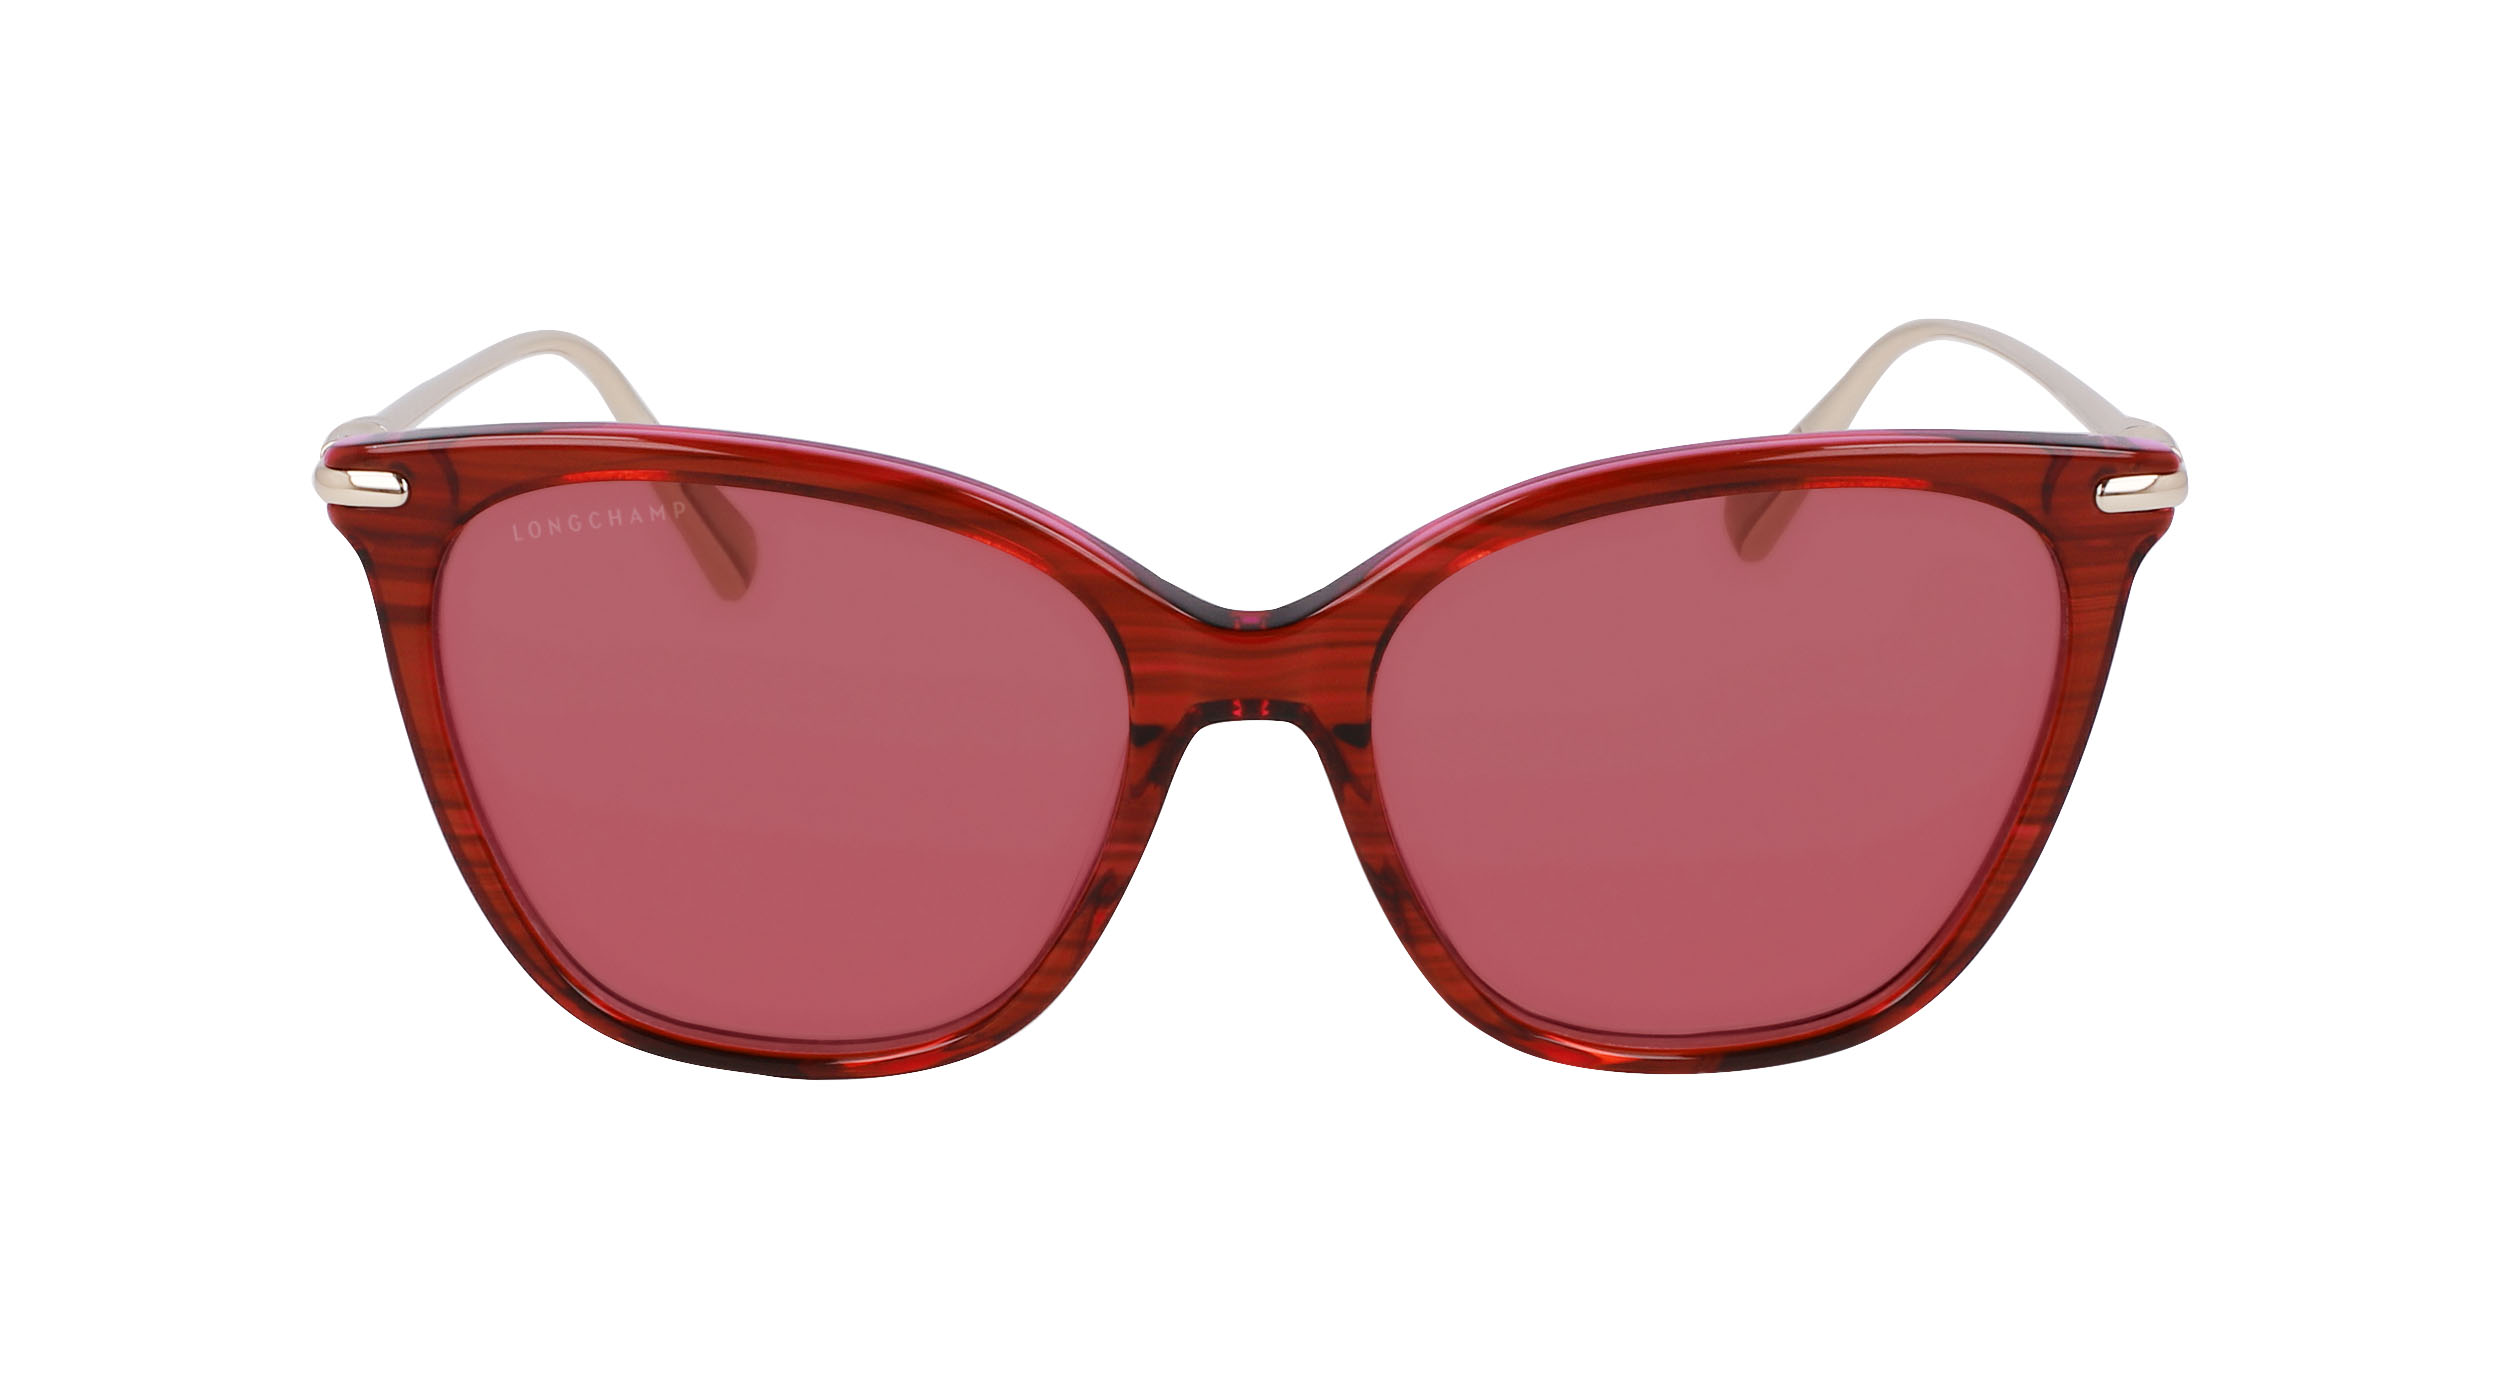 Sunglasses Longchamp Lo757s, pink colour - Doyle